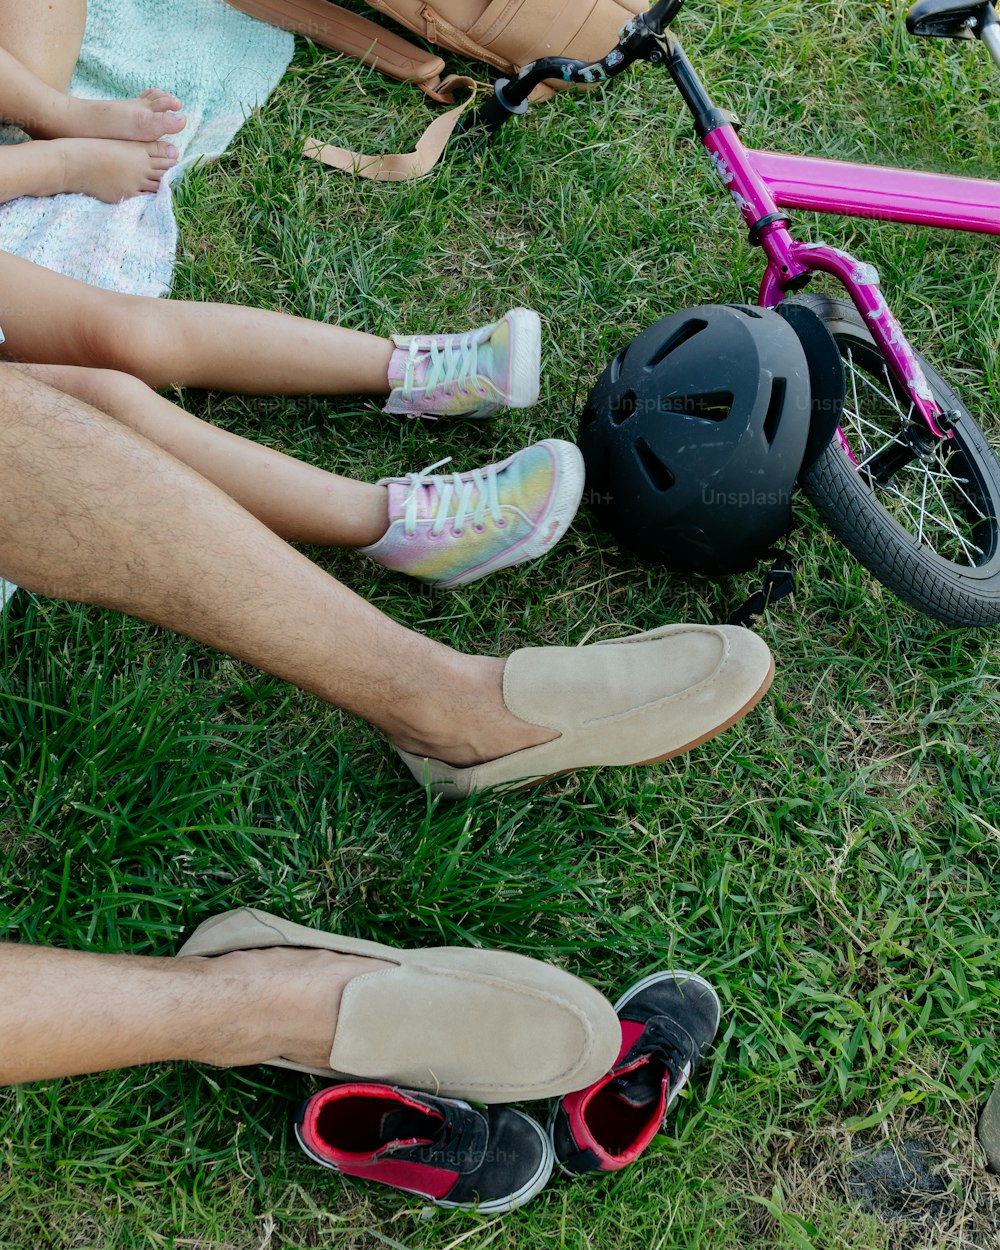 Un hombre y una niña sentados en el césped junto a una bicicleta rosa